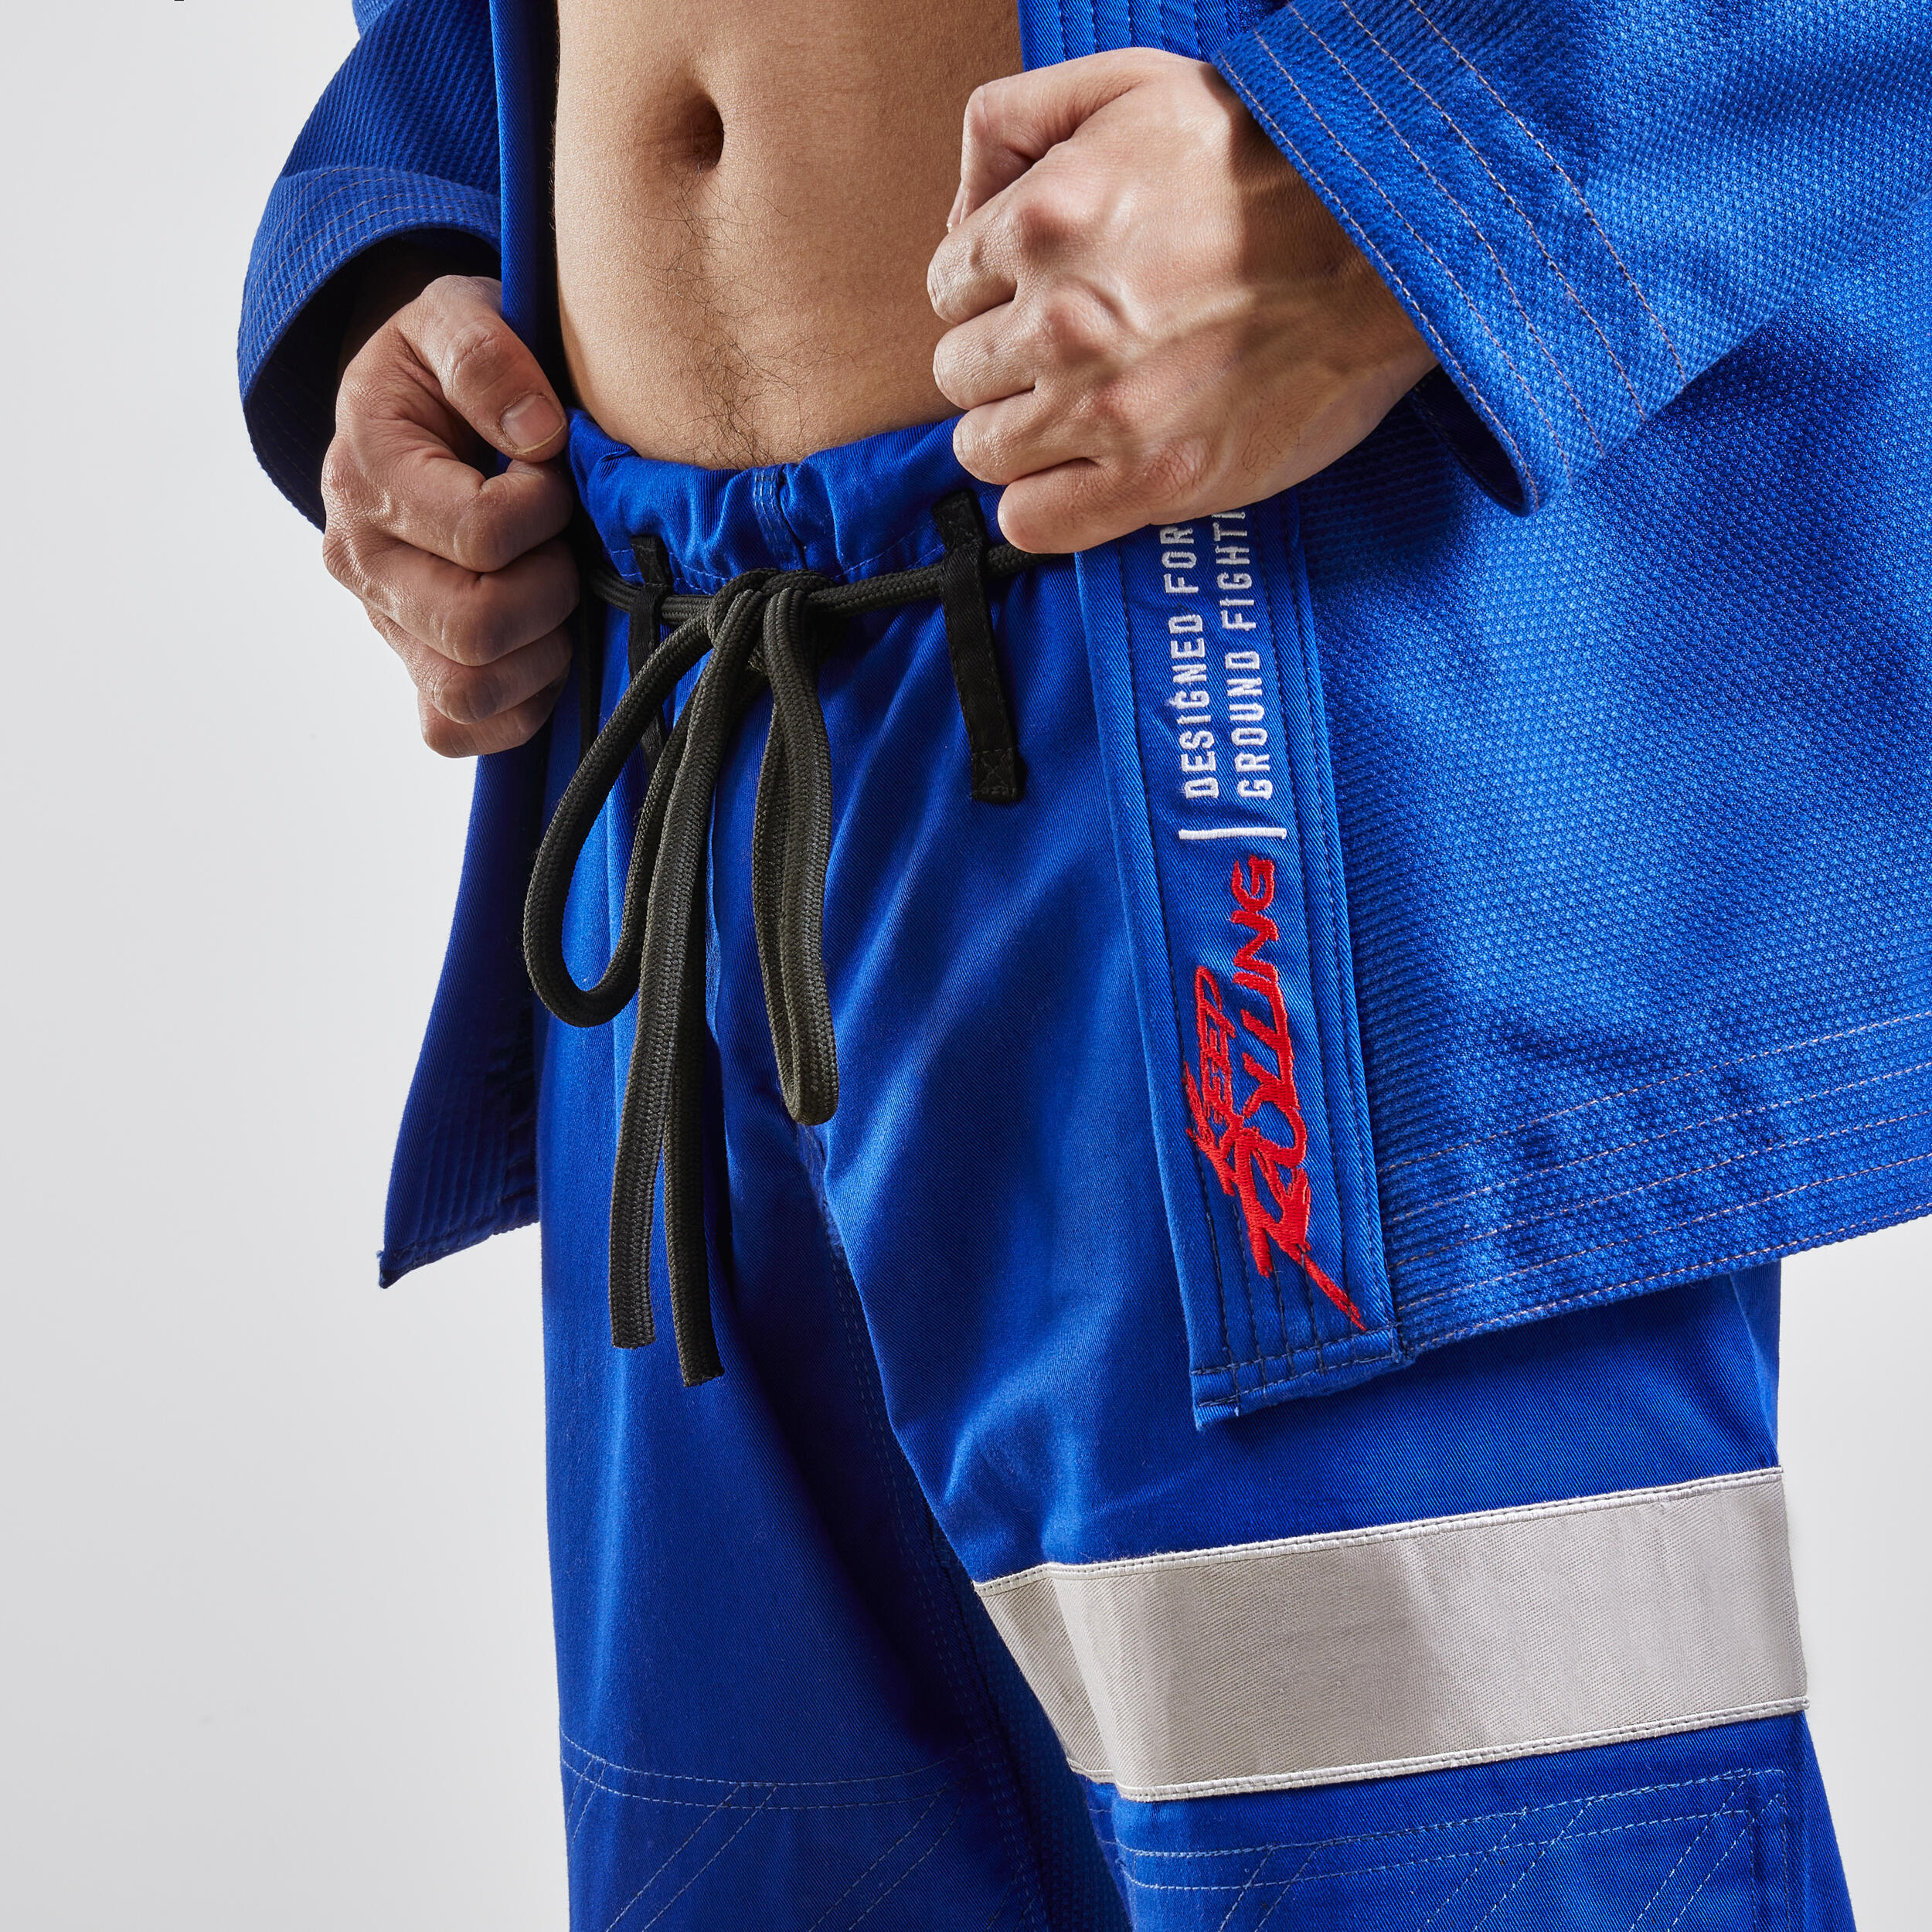 500 Brazilian Jiu-Jitsu Adult Uniform - Blue 8/9